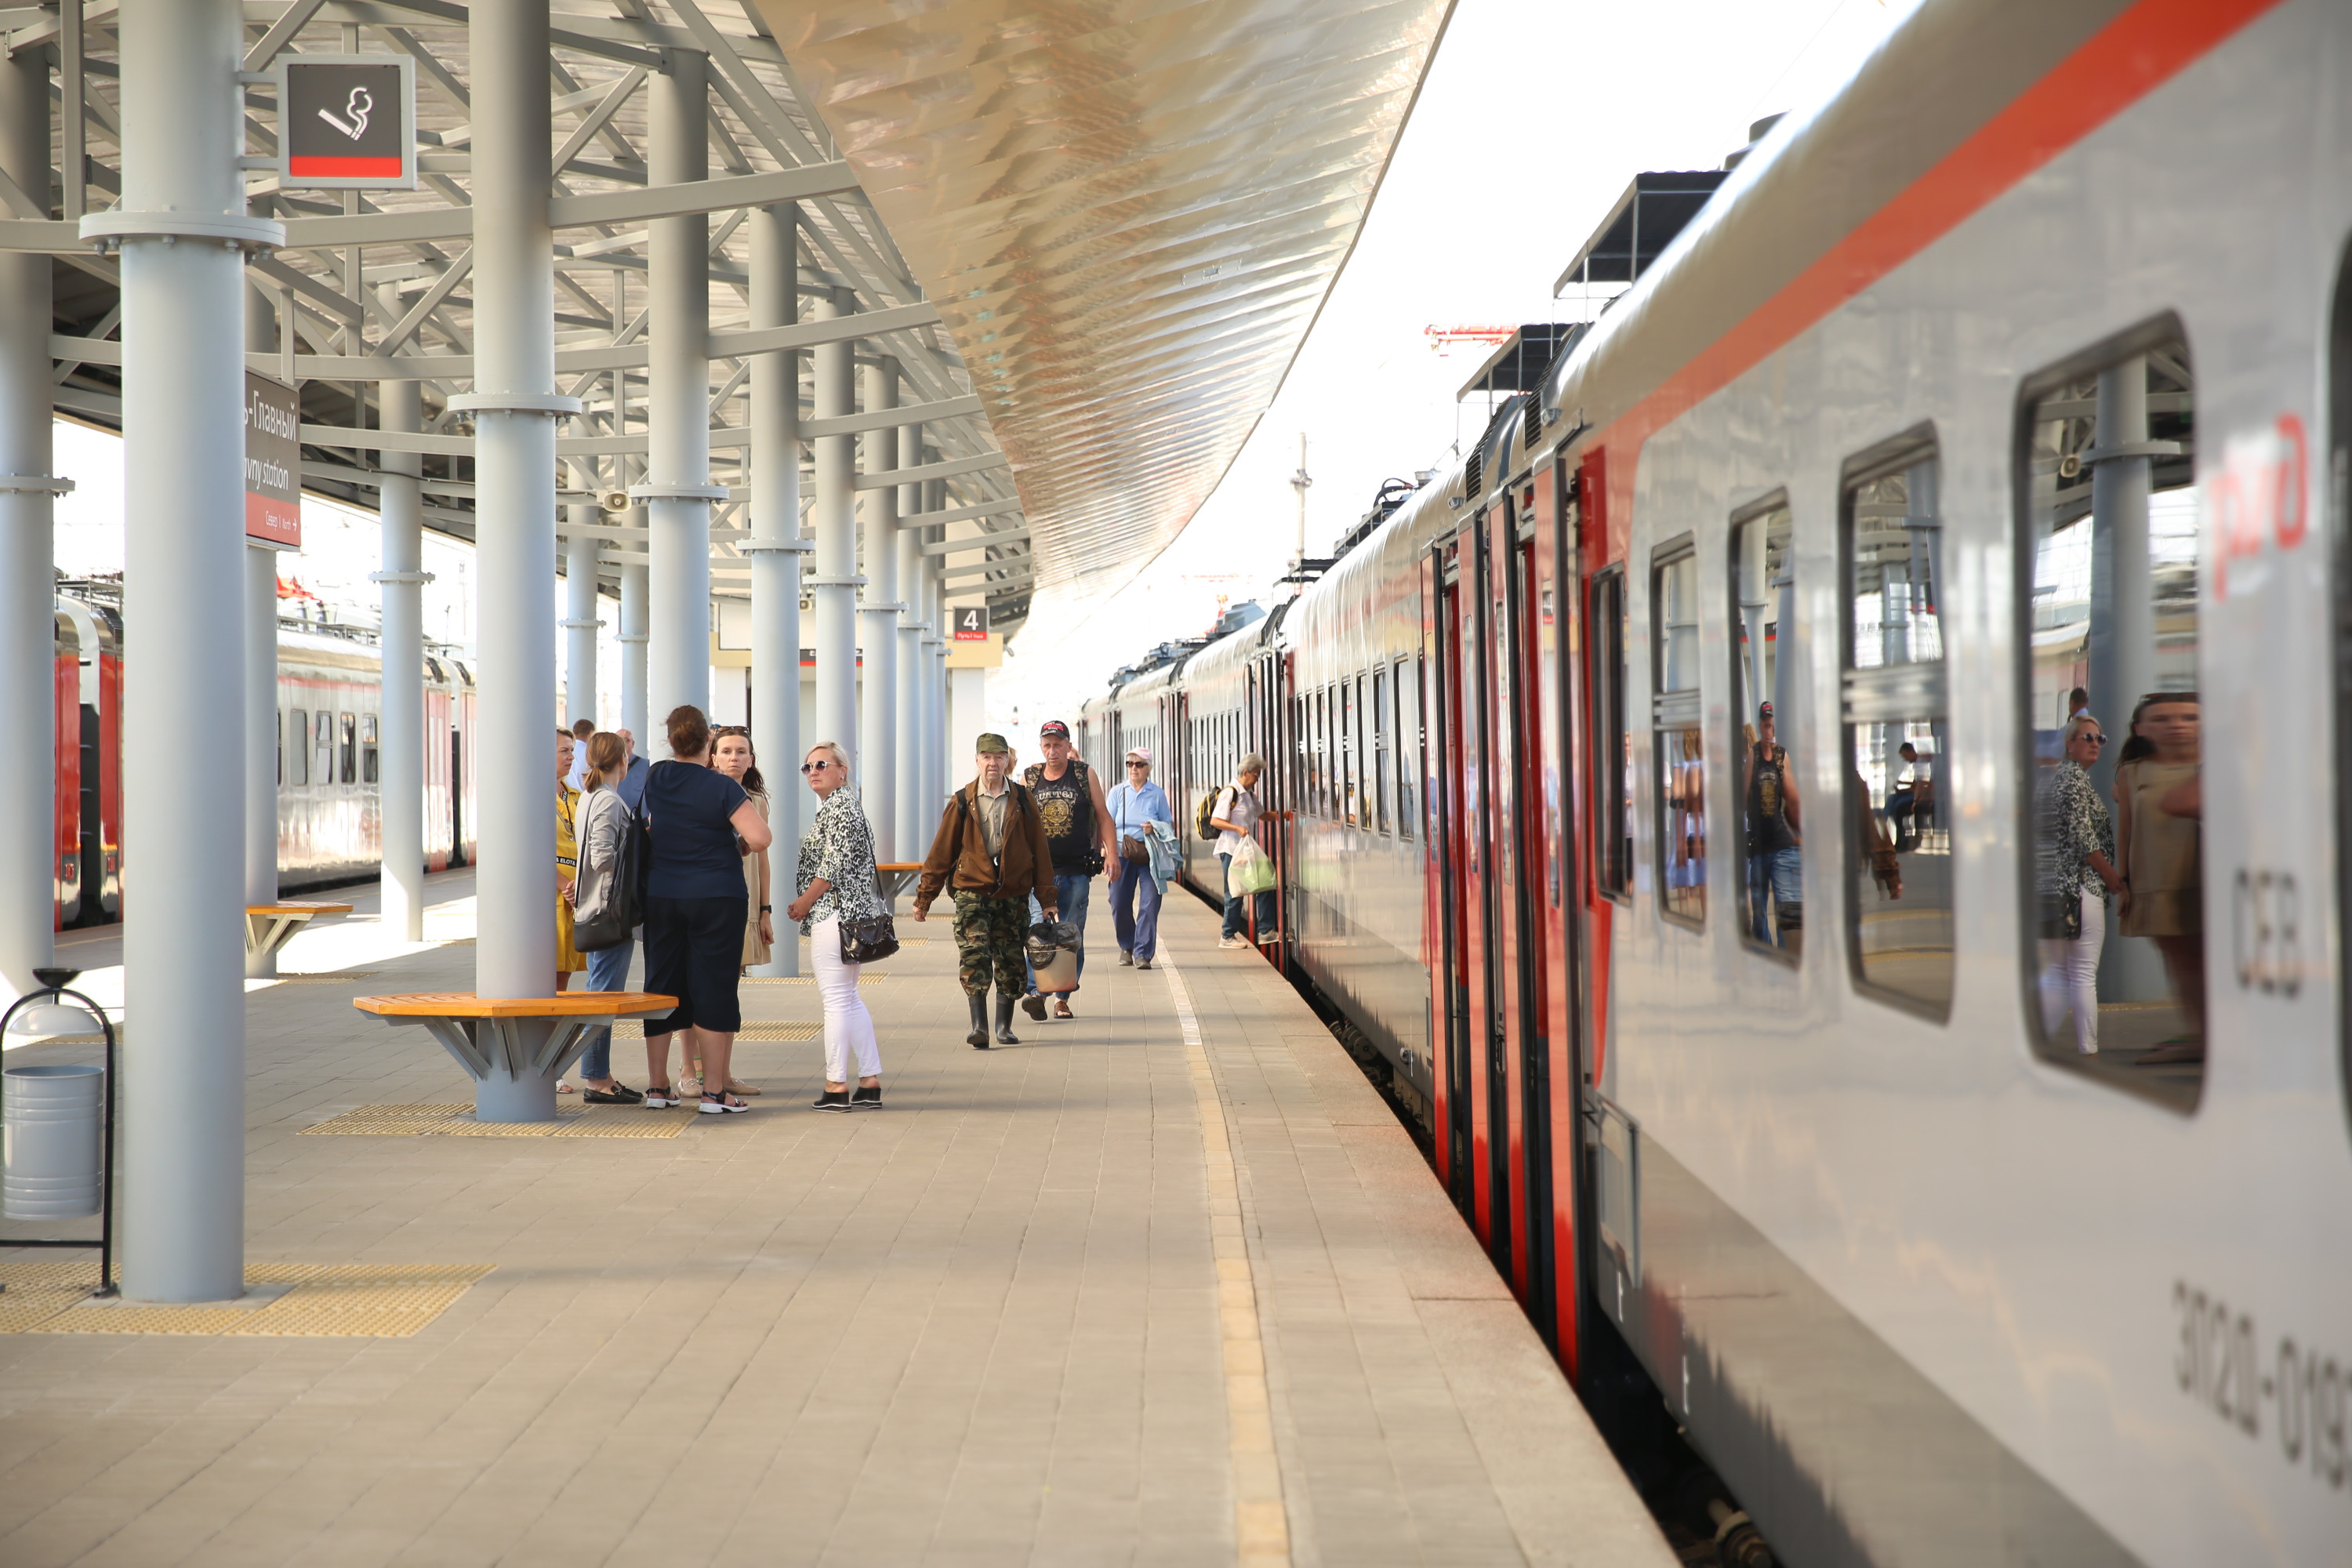 Реконструкция платформы вокзала Ярославль-Главный началась в марте 2021 года и завершилась в августе этого года